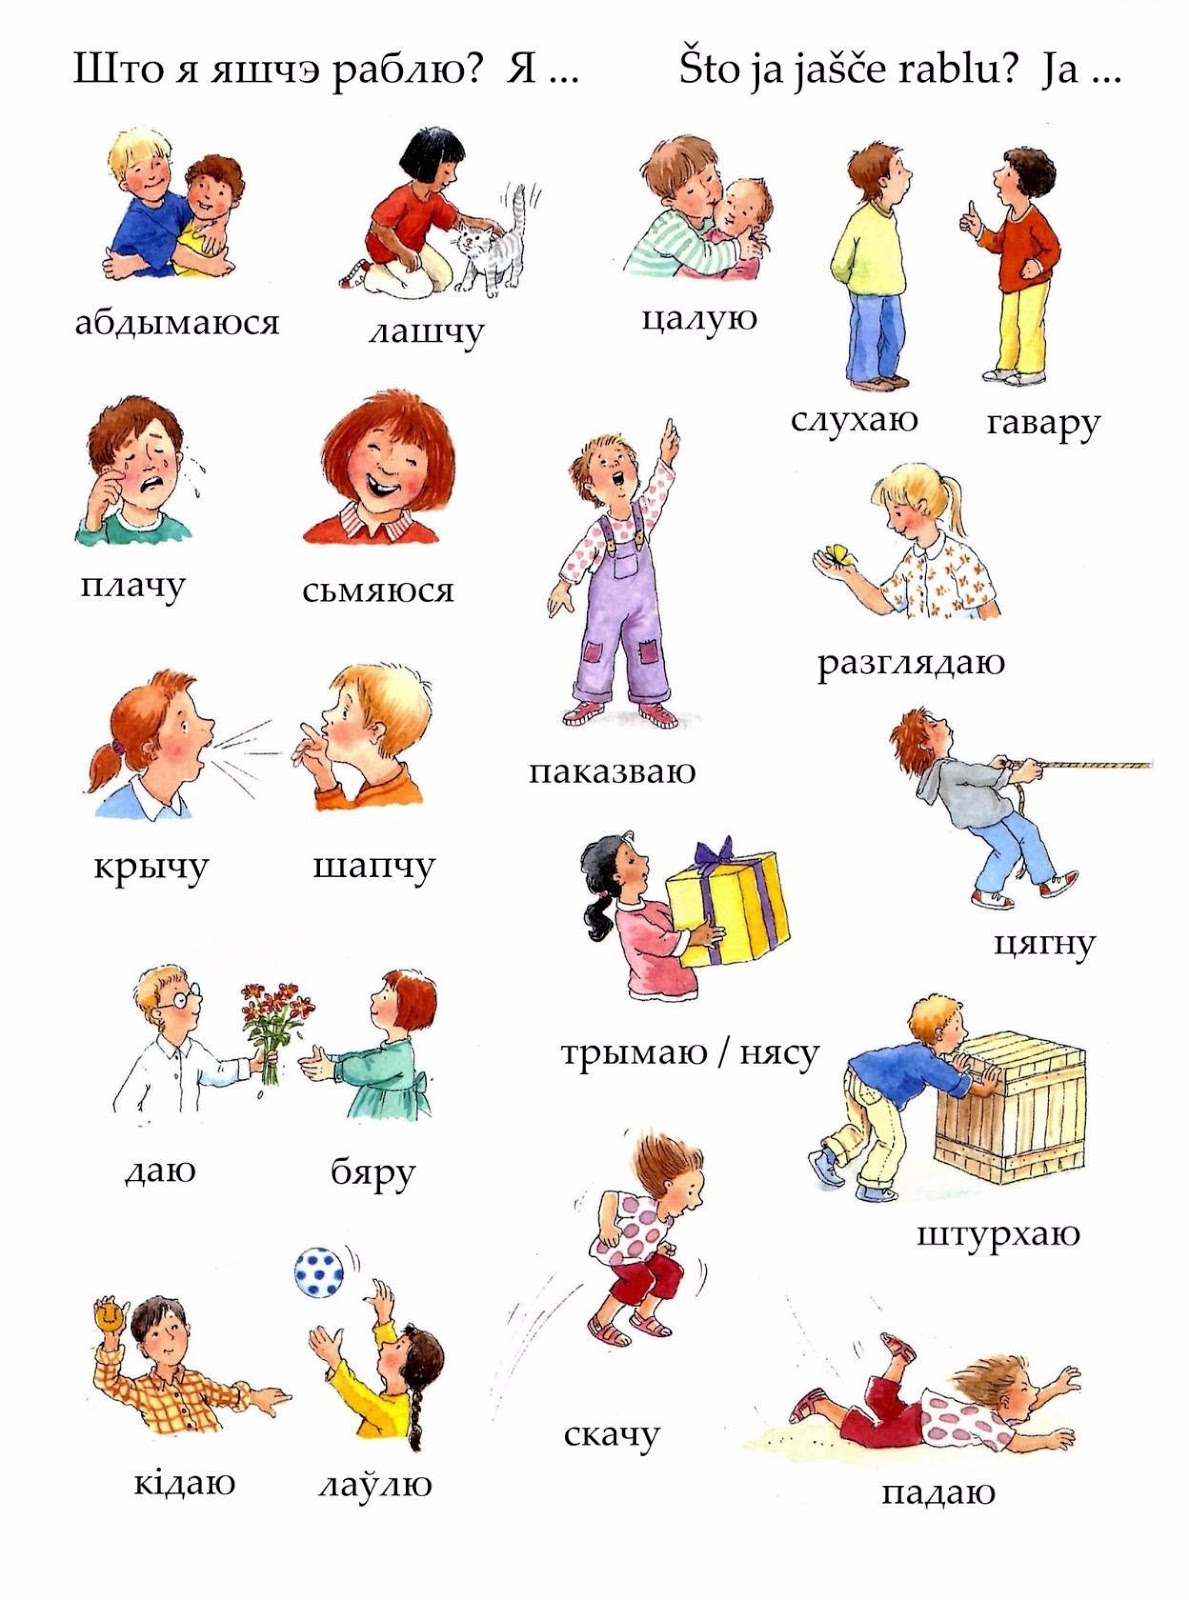 Живете на немецком языке. Немецкие глаголы в картинках. Глаголы в картинках на немецком языке. Немецкие слова. Немецкие глаголы для детей.